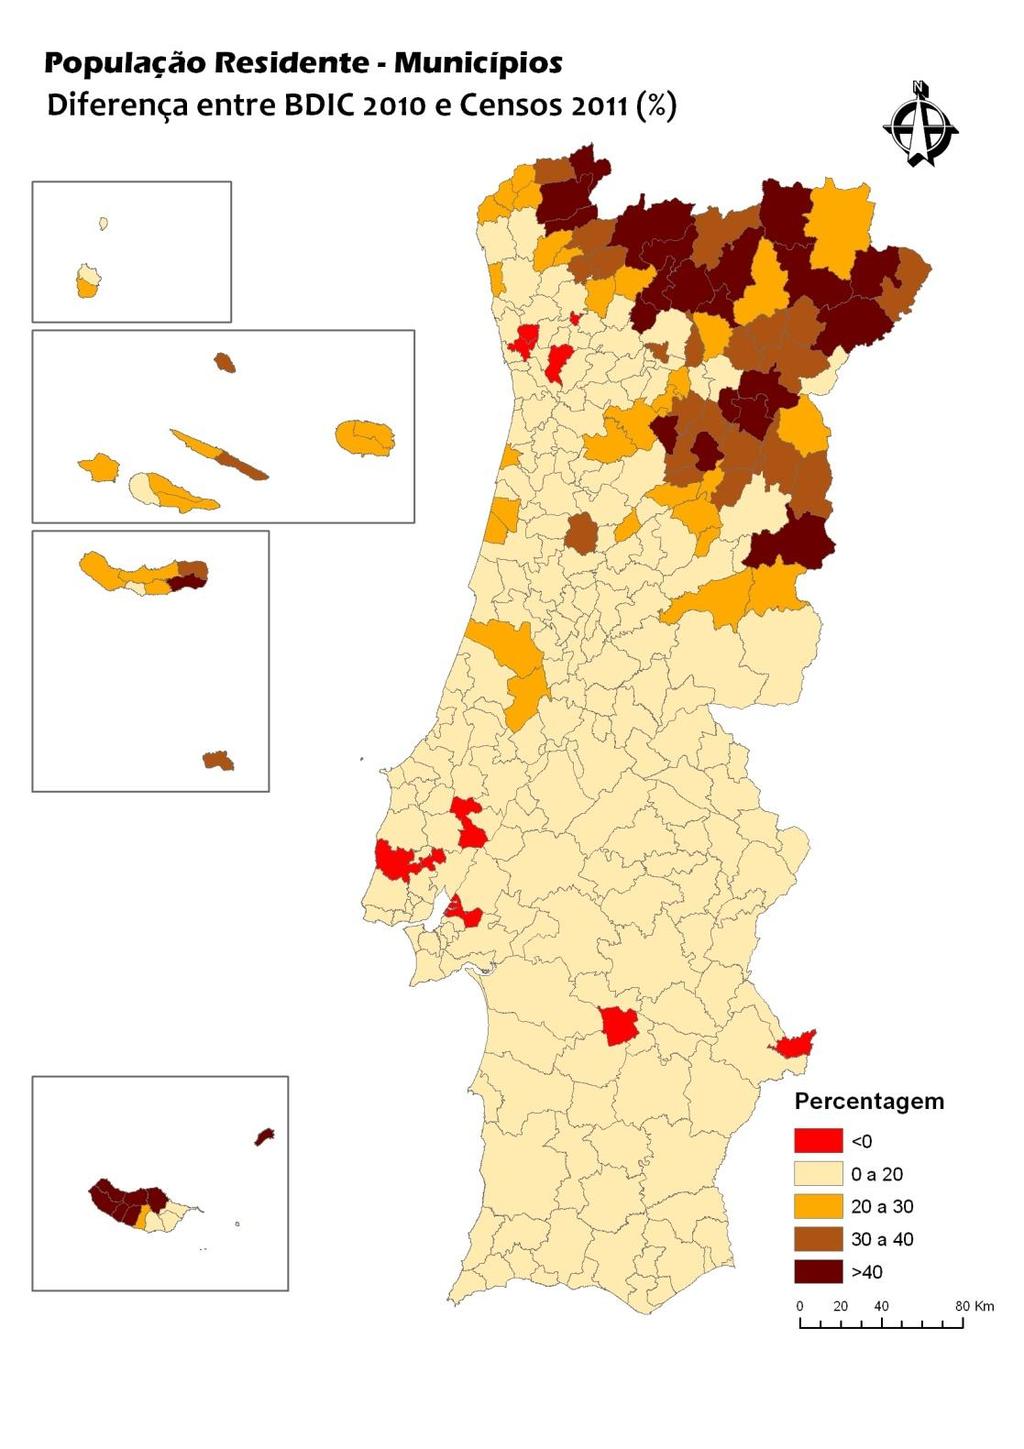 Fig 4 Diferença entre a BDIC 2010 e os Censos 2011, em percentagem Da análise da figura 3, conclui-se que são os municípios localizados na faixa litoral a partir de Lisboa para Norte aqueles que